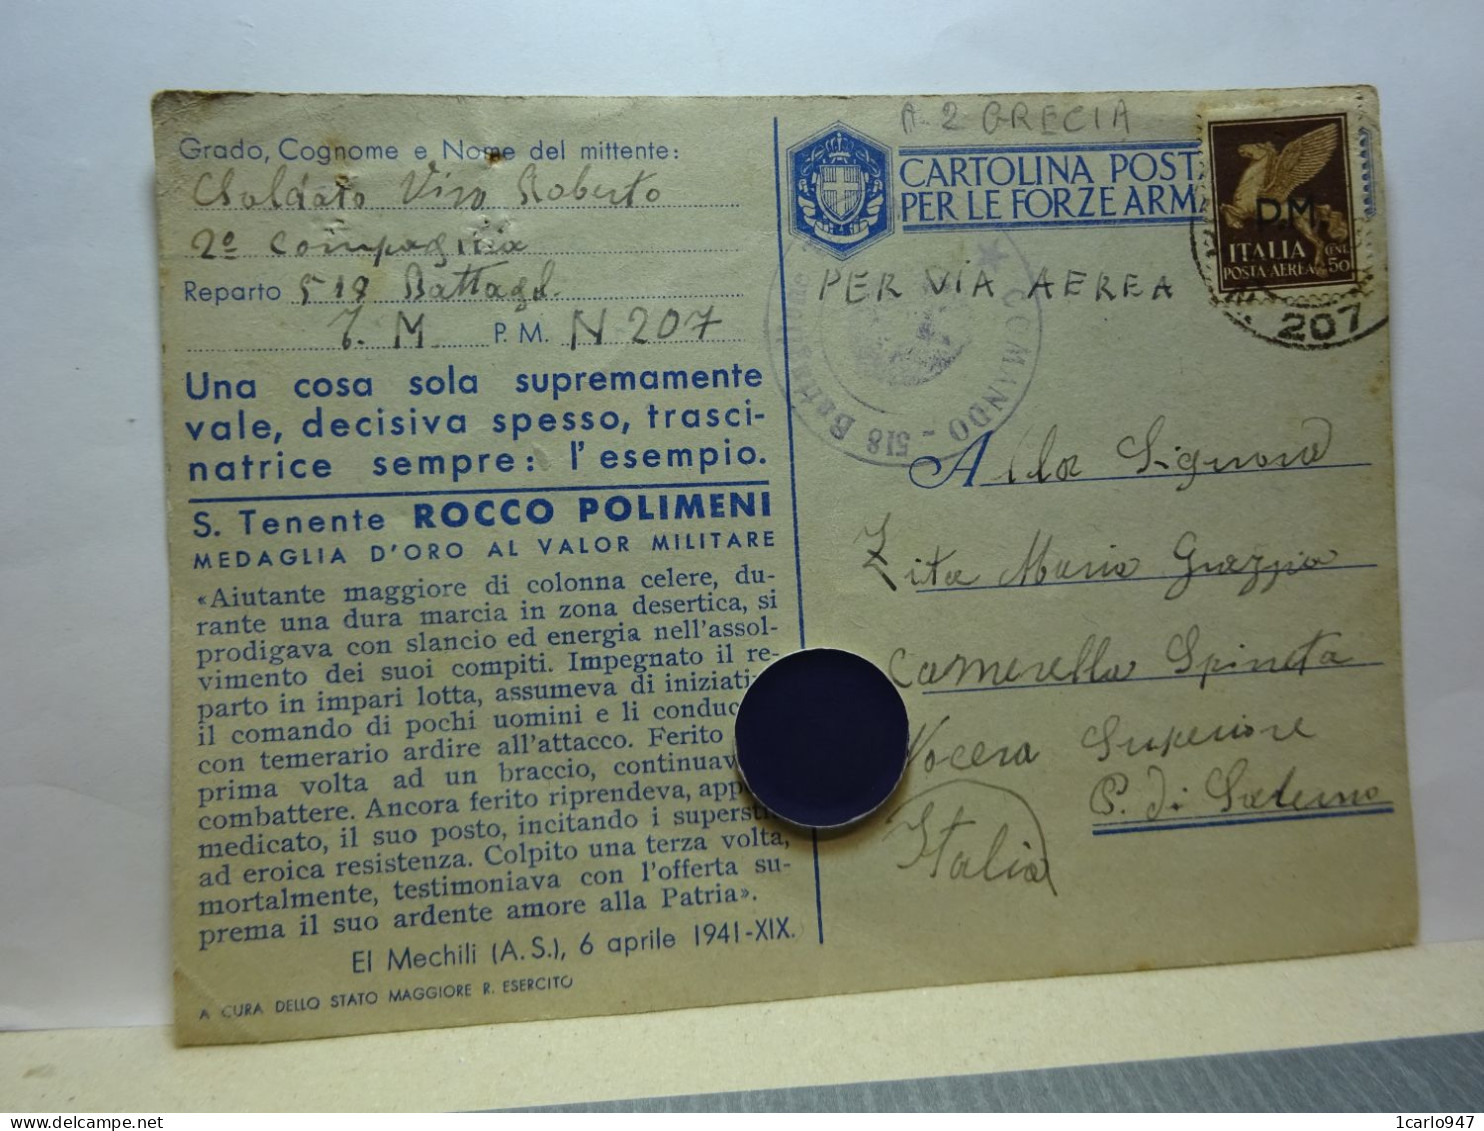 II°GUERRA   - FRANCHIGIA   - SERIE  MEDAGLIE D'ORO   --- S. TENENTE  ROCCO POLIMENI - Guerre 1939-45